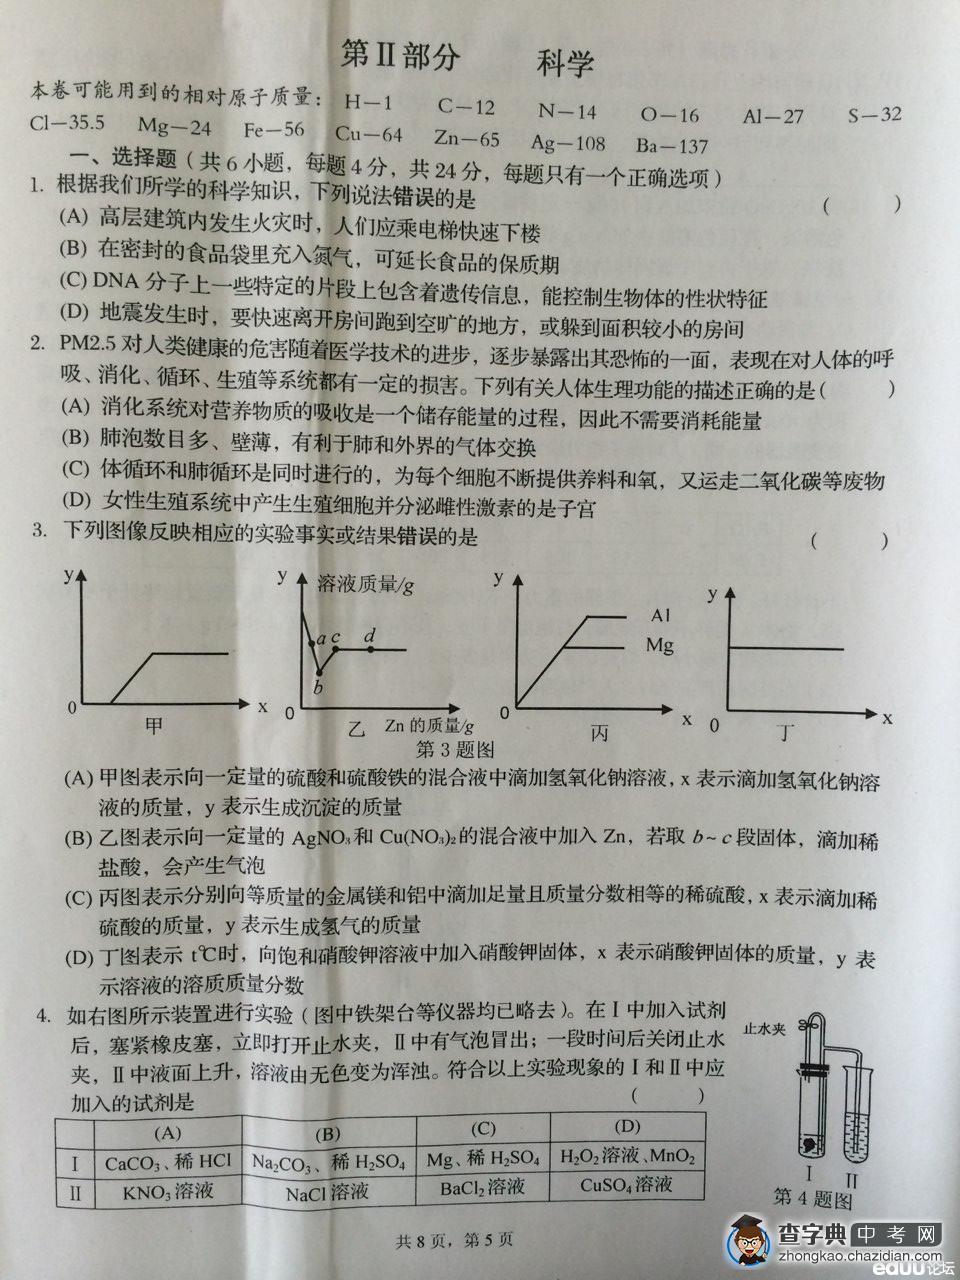 宁波市2014年普通高中保送生招生考试试卷及答案——科学2